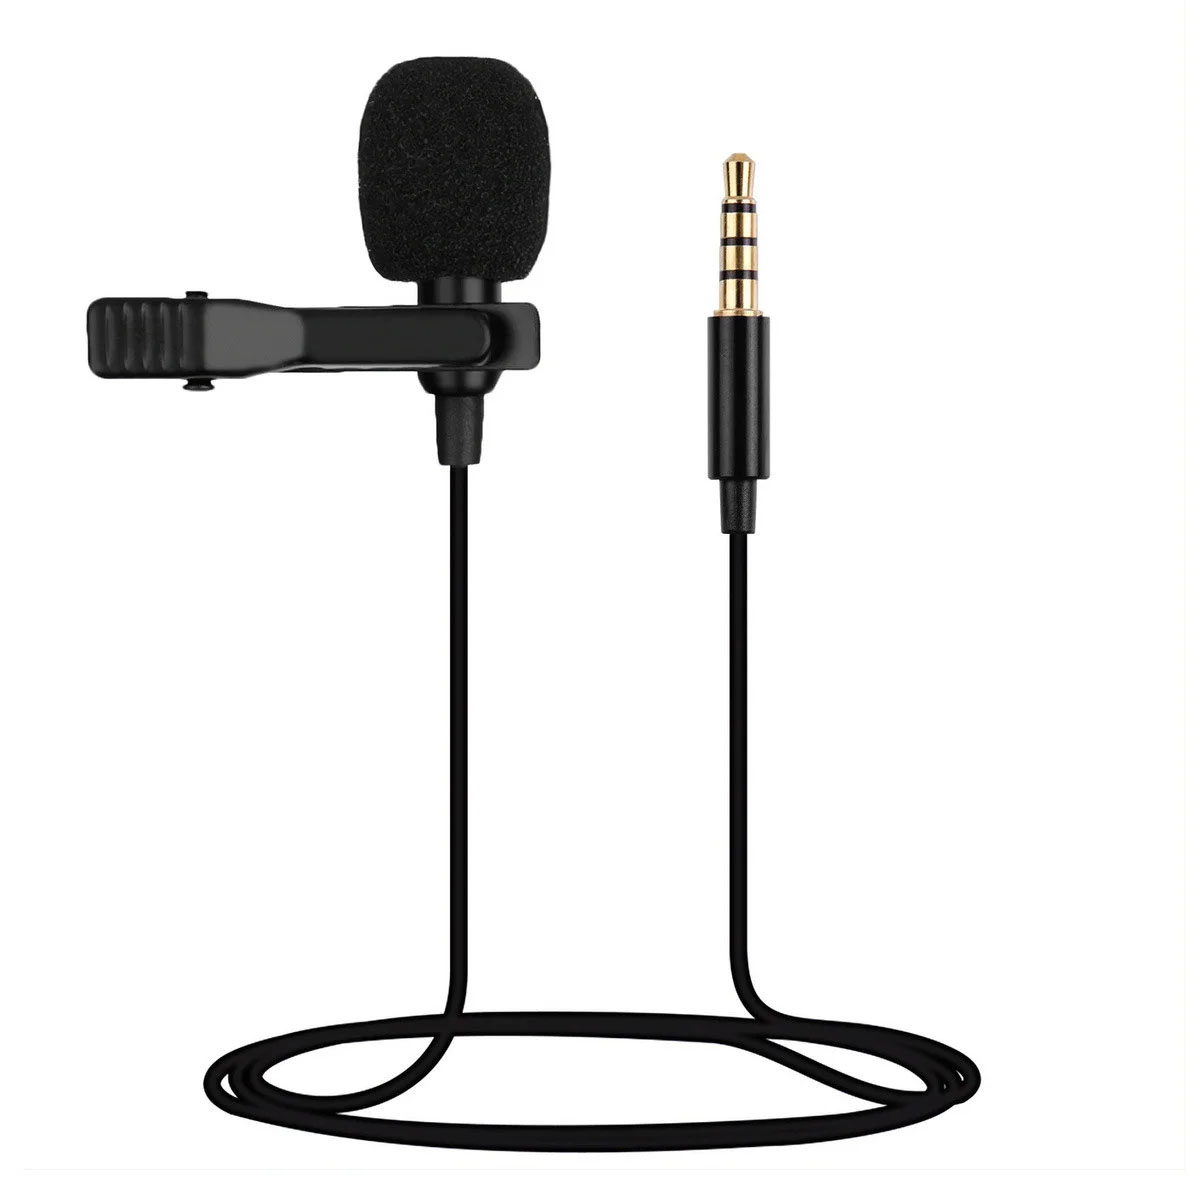 Всенаправленный петличный (на прищепке) микрофон KIN KM-002, разъем Jack 3.5 мм, длина 1.8 метра, цвет черный